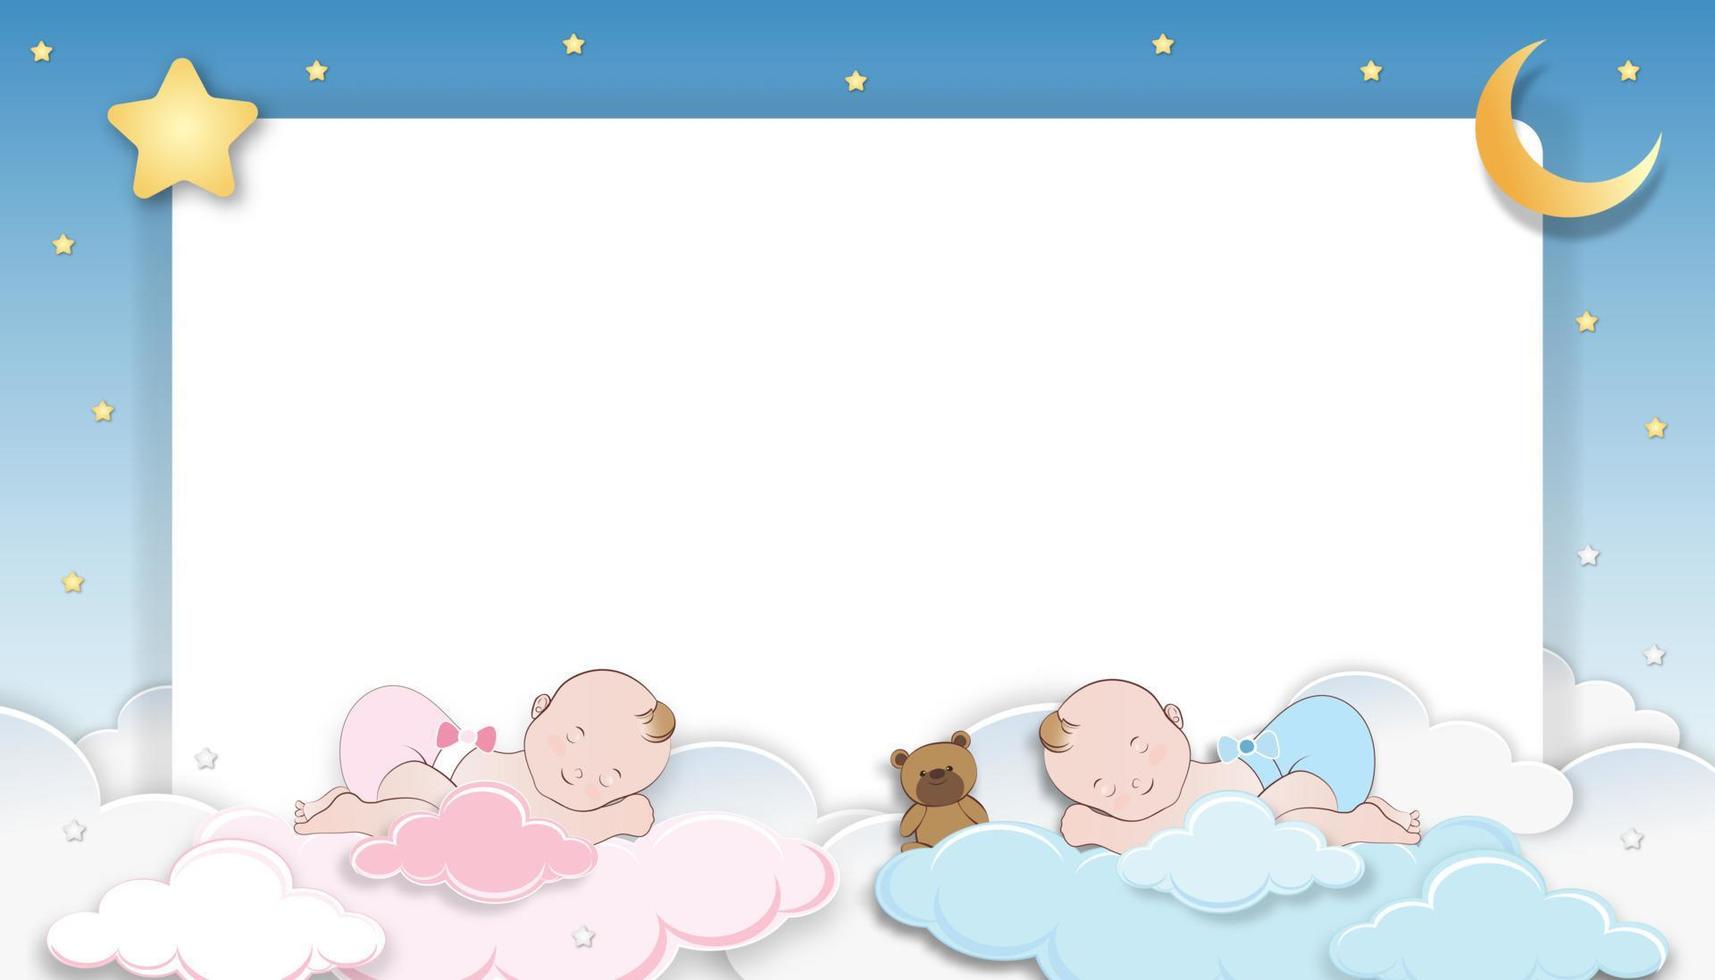 tarjeta de ducha de bebé, lindo niño gemelo, niña durmiendo en una nube esponjosa con luna creciente y estrella en el fondo del cielo azul, fondo de paisaje de nubes cortado en papel vectorial con espacio de copia para la foto del bebé recién nacido vector